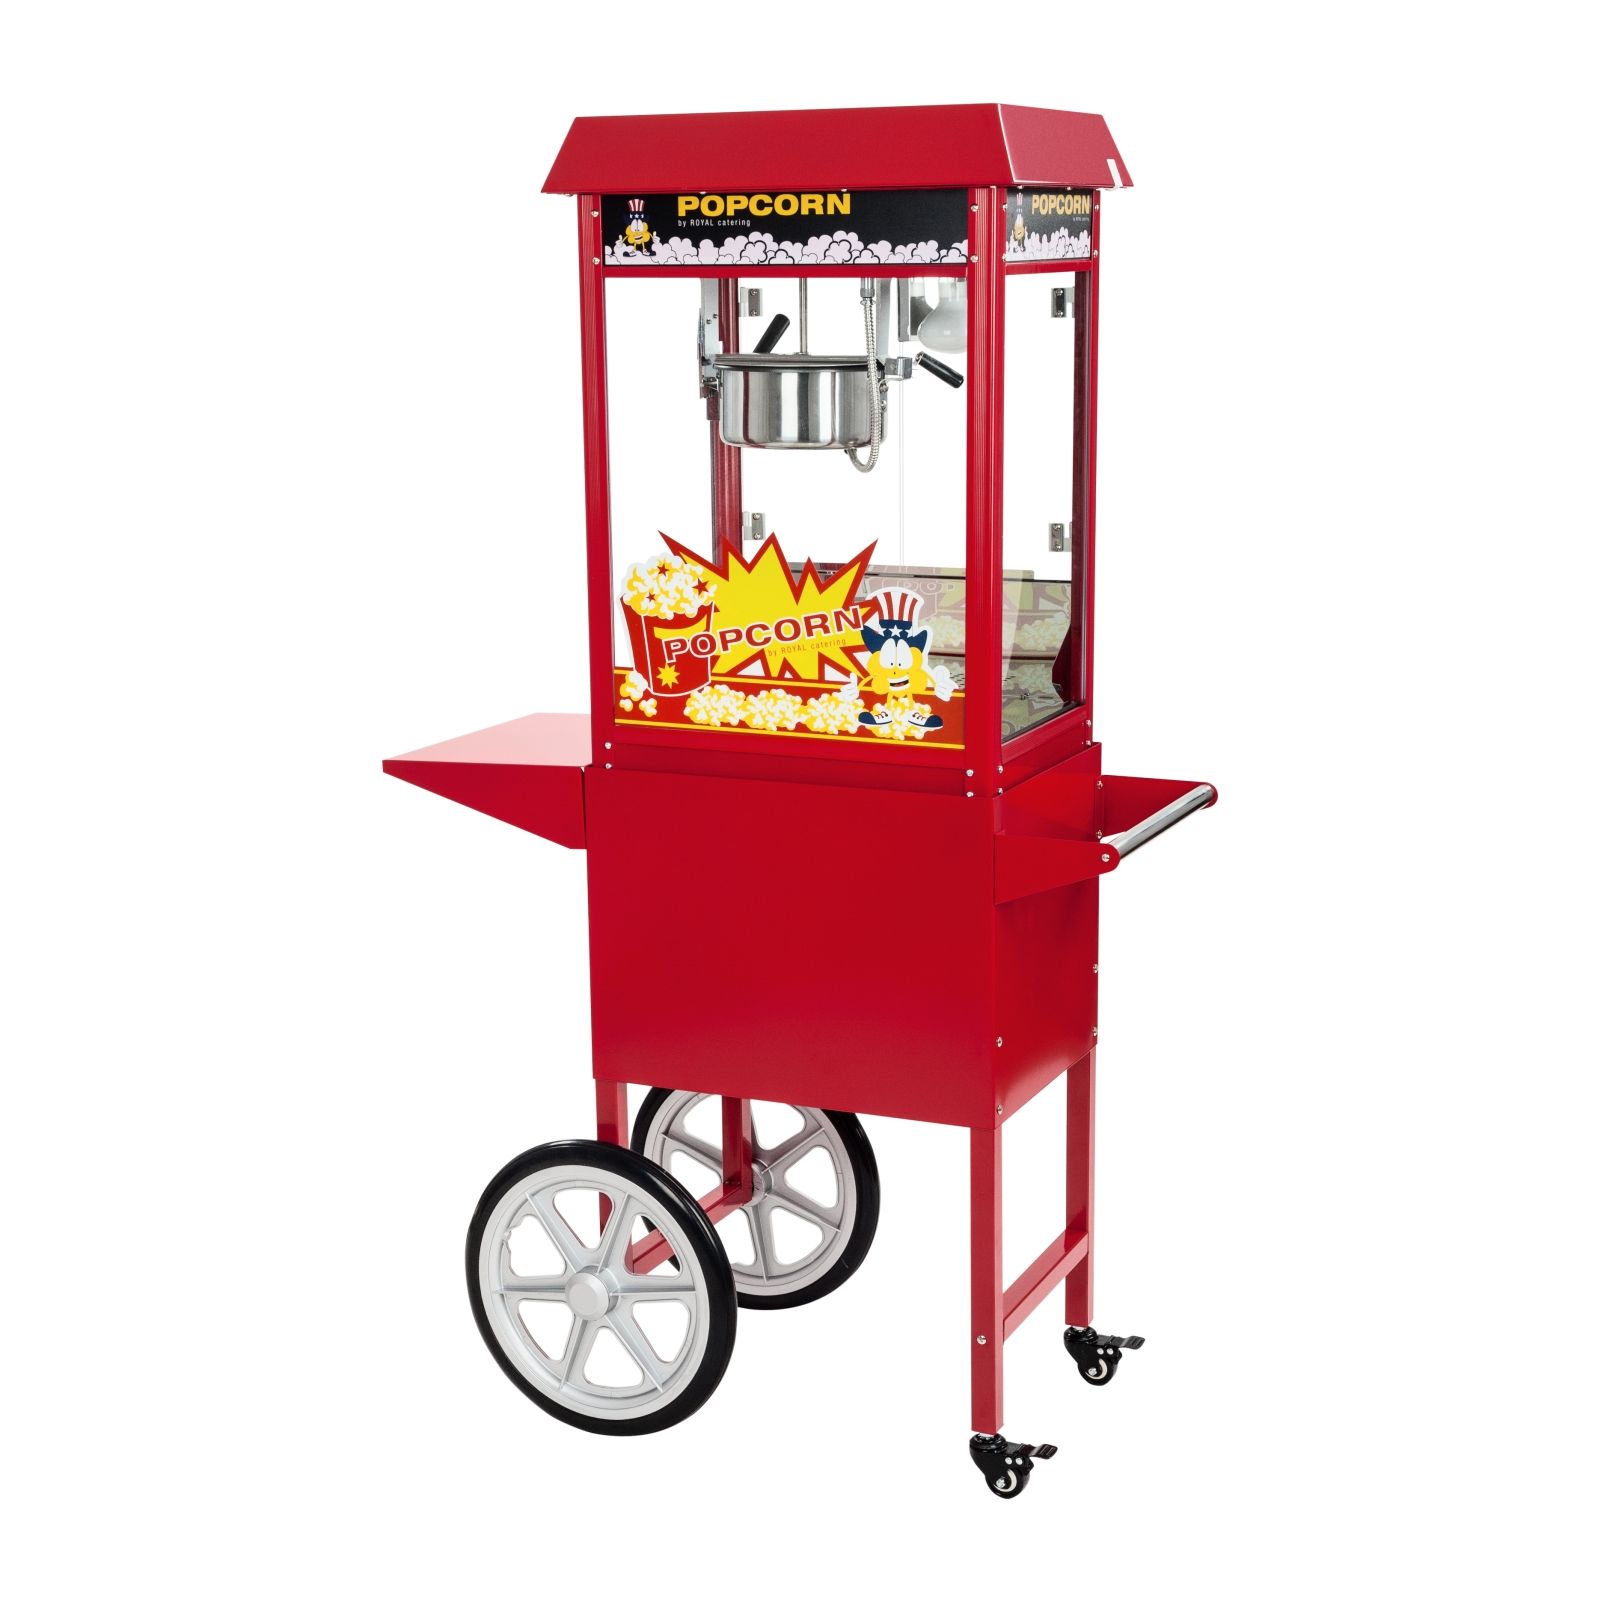 Details about   Popcornmaschine Popcornautomat Popcornmaker Popcorn Maschine Rot 1370w 